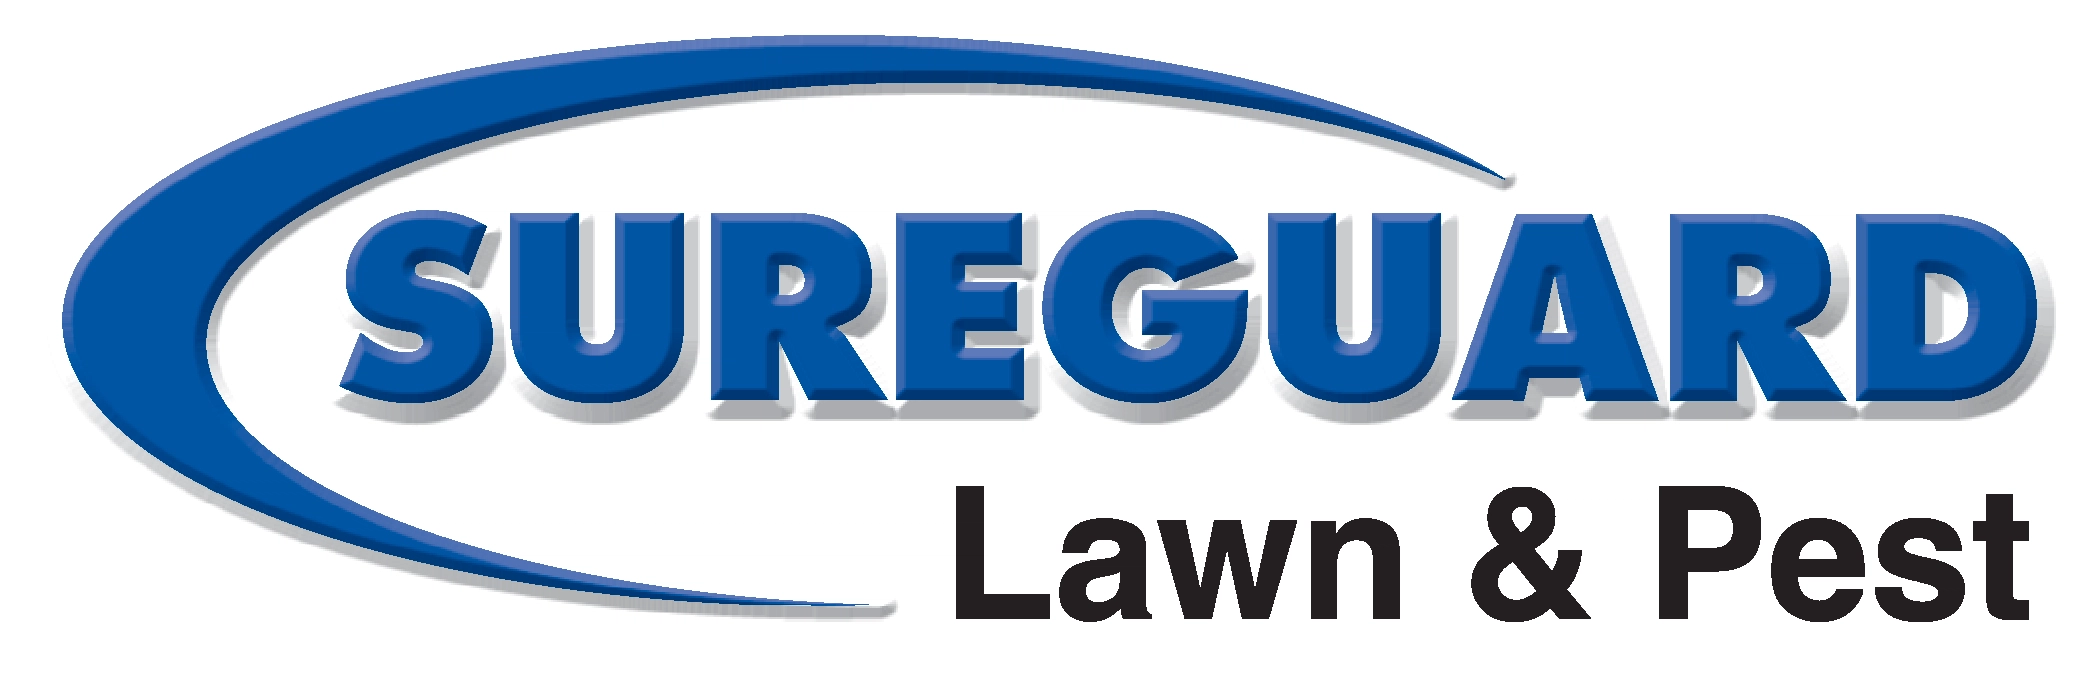 Sureguard Lawn & Pest Logo